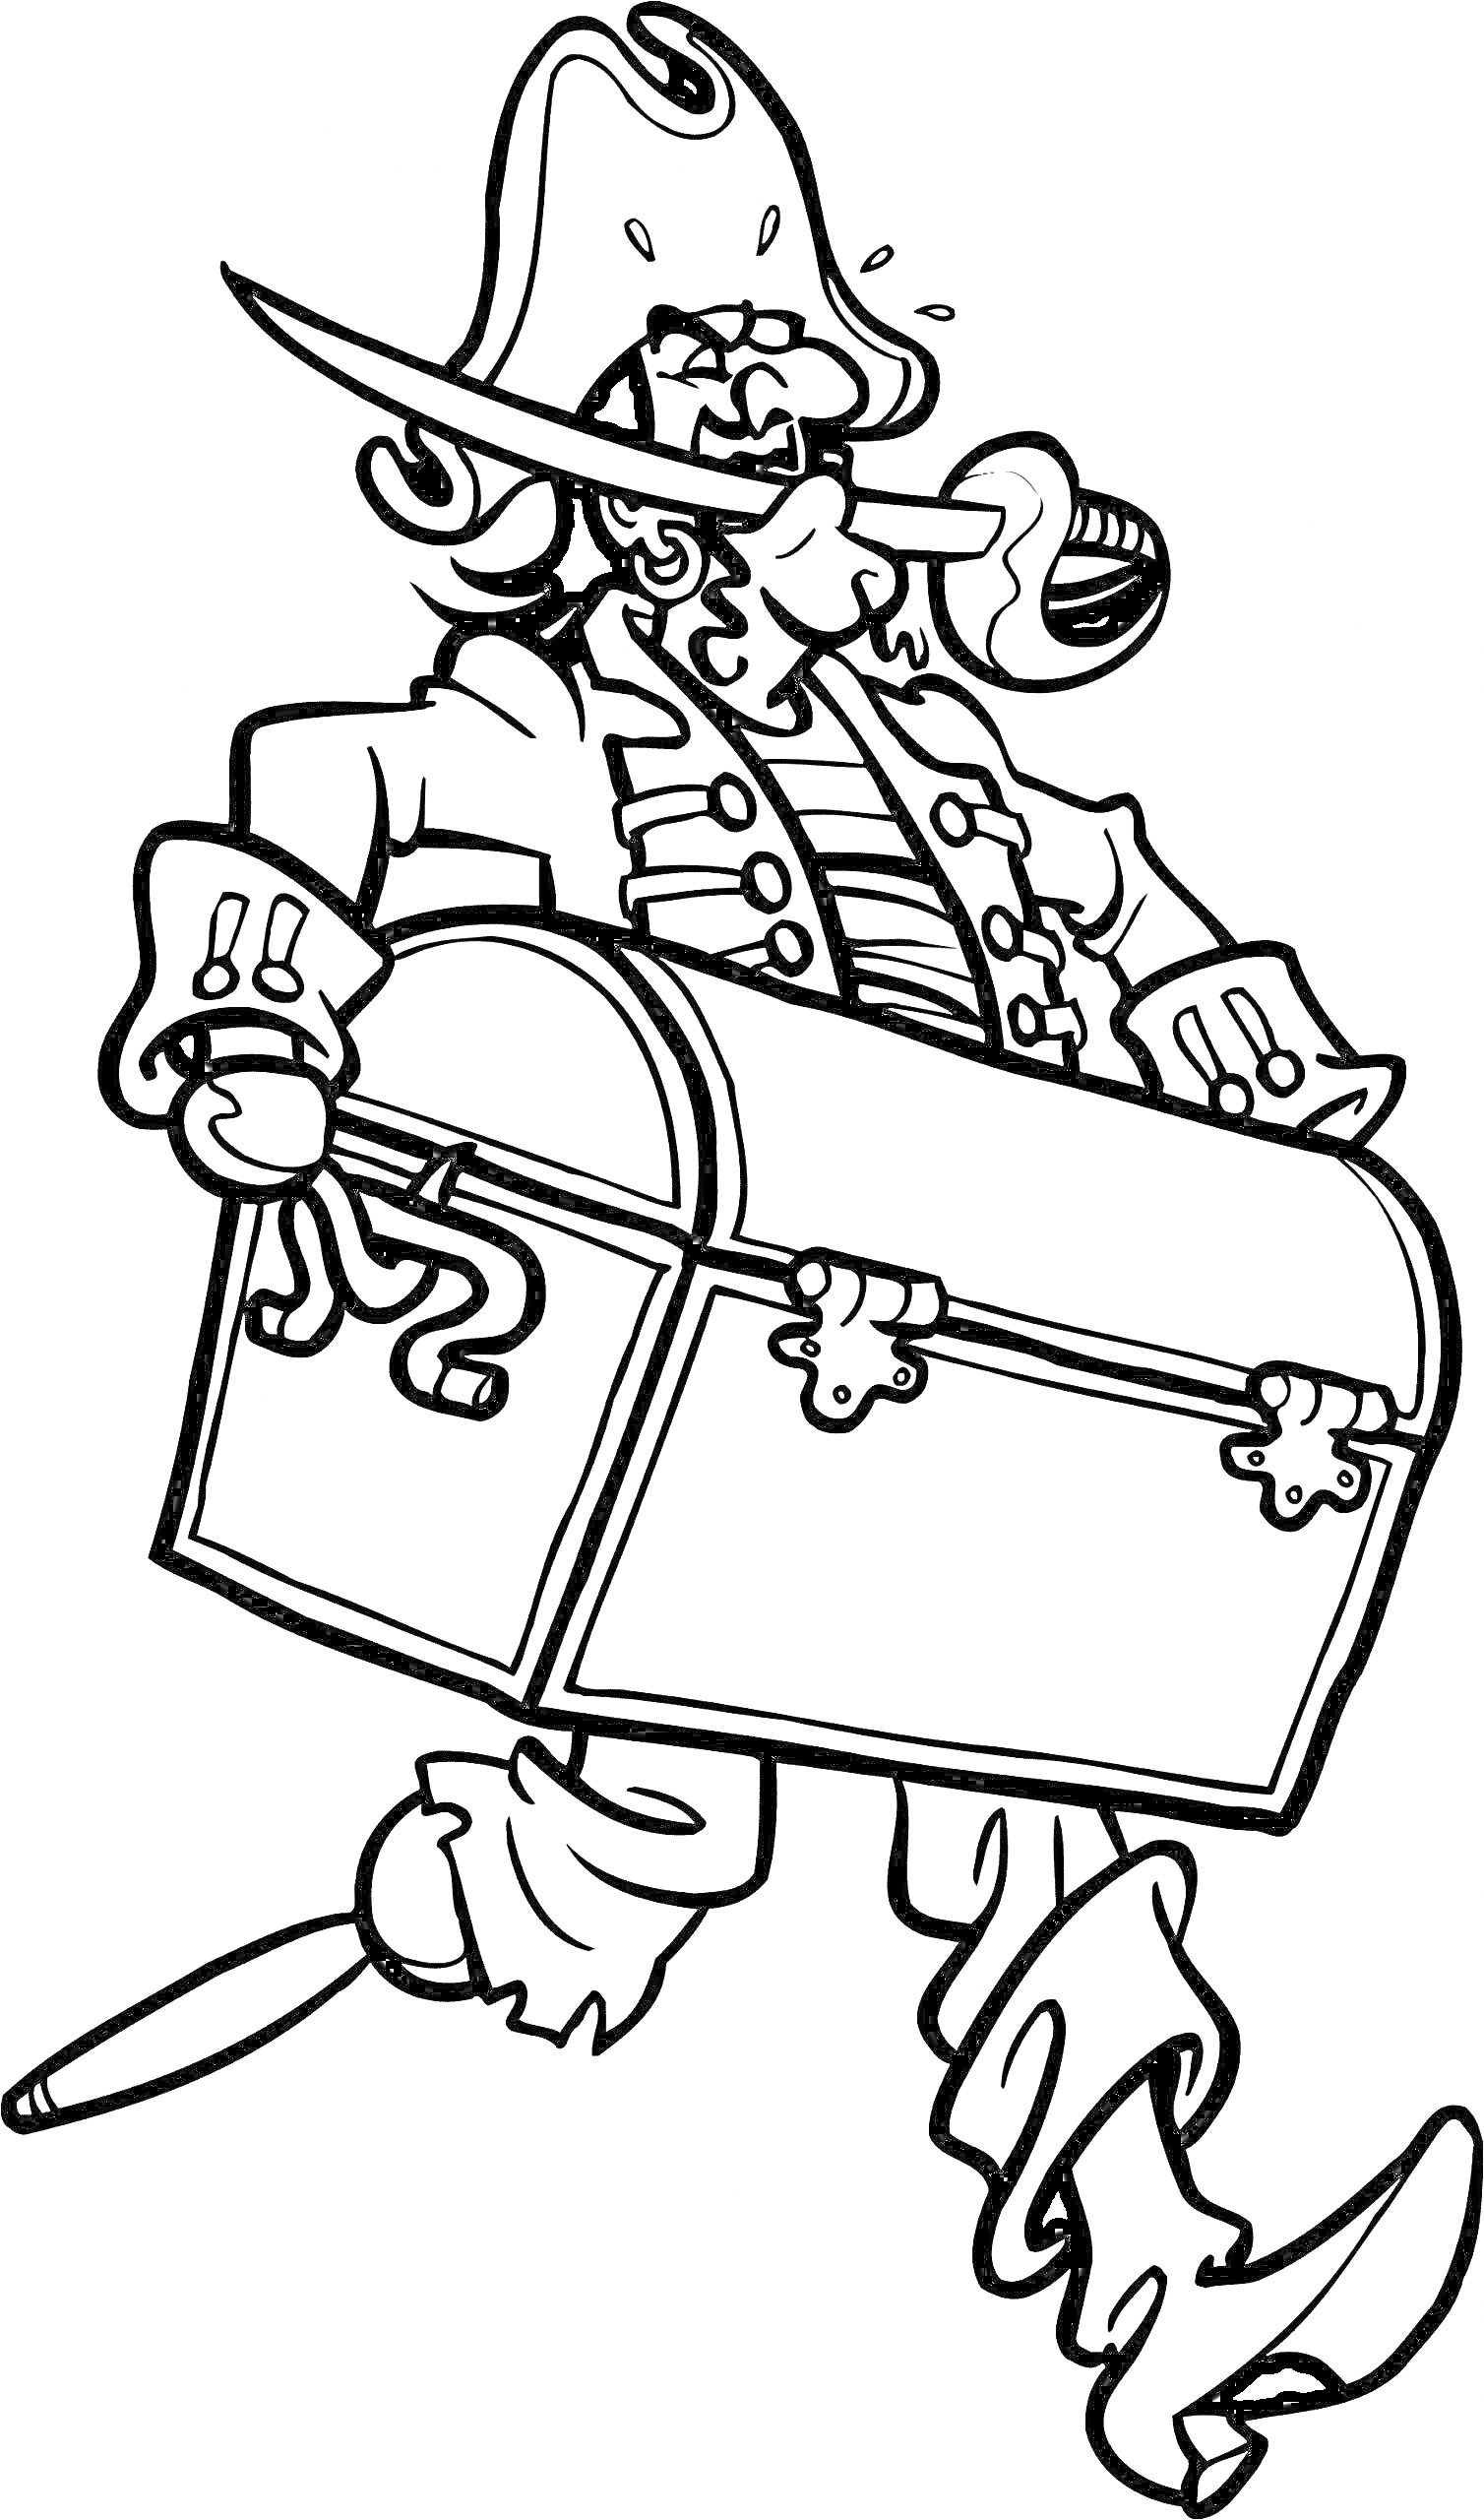 Раскраска Пират с сундуком, трубка во рту, шляпа с пером, меч за поясом